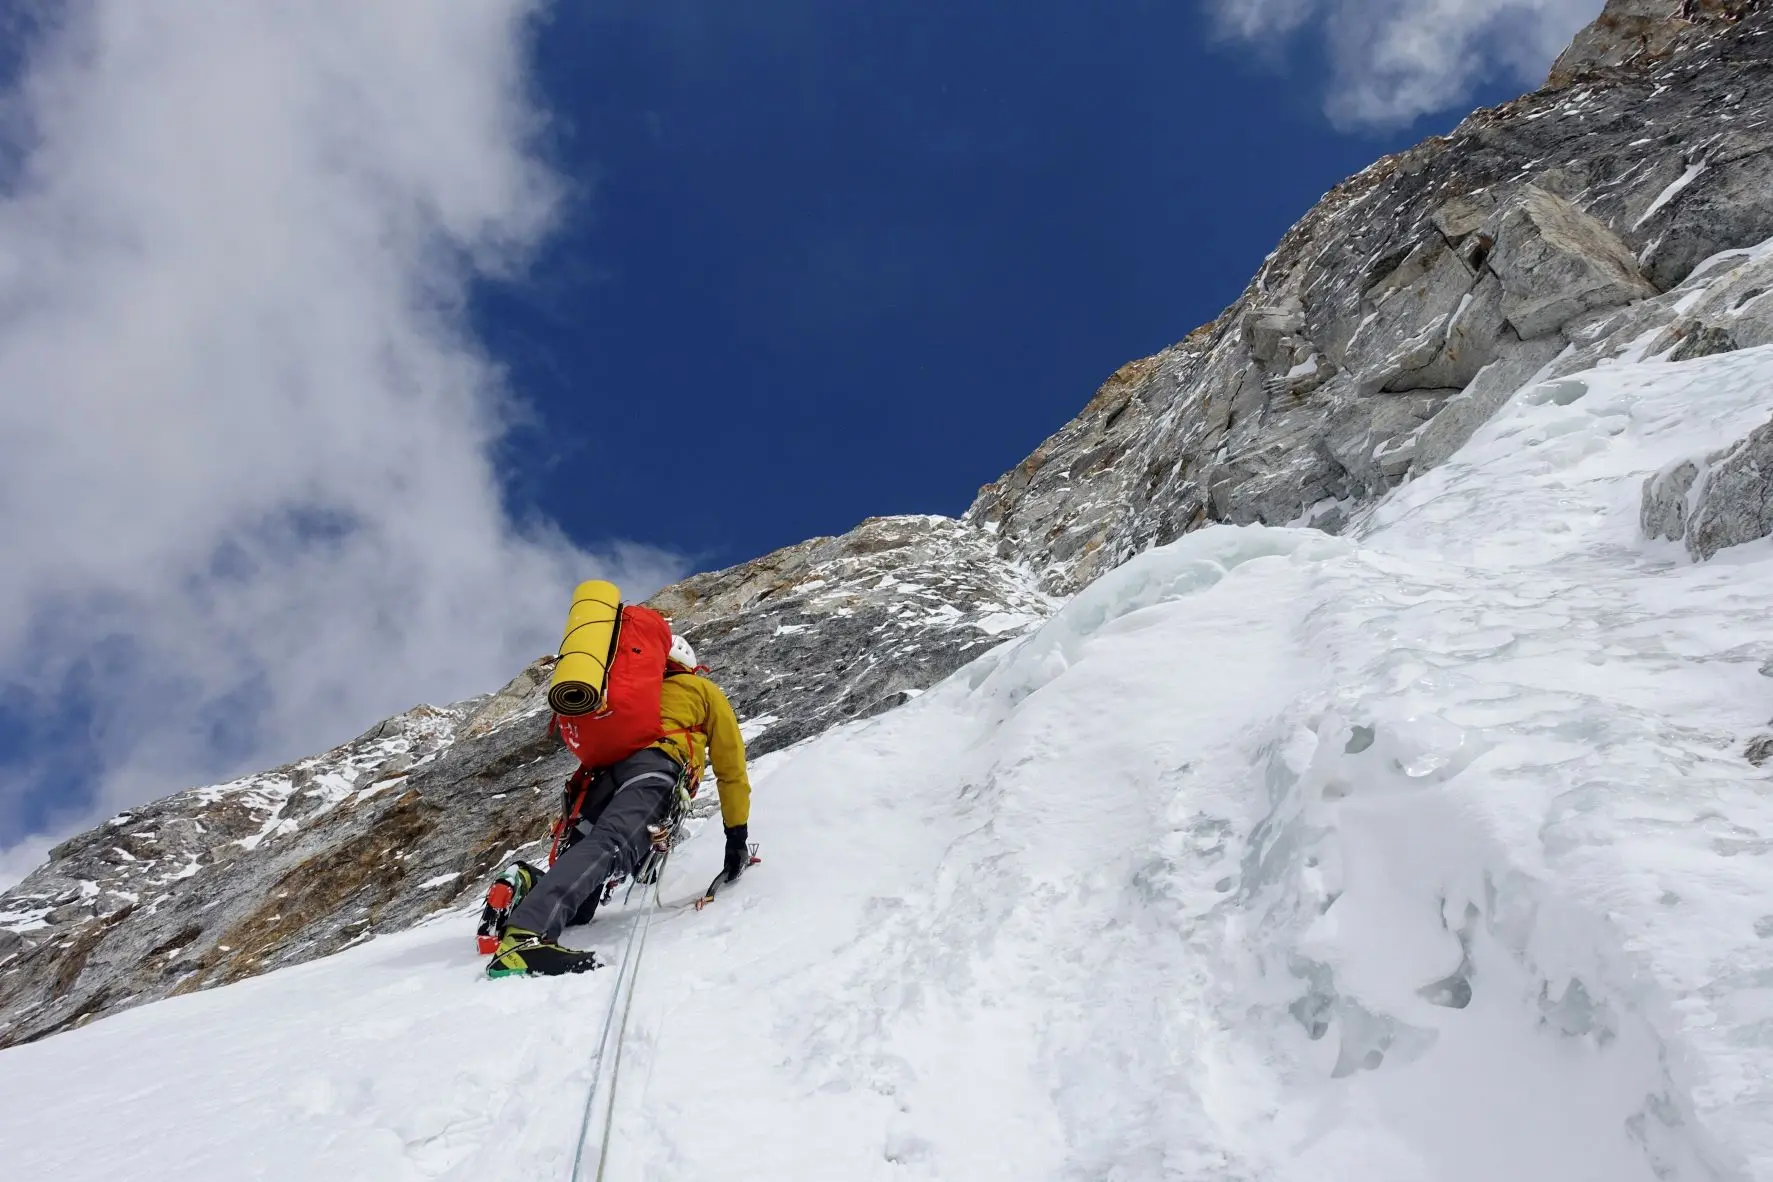 Пол Рамсден (Paul Ramsden) и Тим Миллер (Tim Miller) в восхождении по маршруту "The Phantom Line" по северной стене горы Джугал Спайр (Jugal Spire, 6563 метров) в Непале